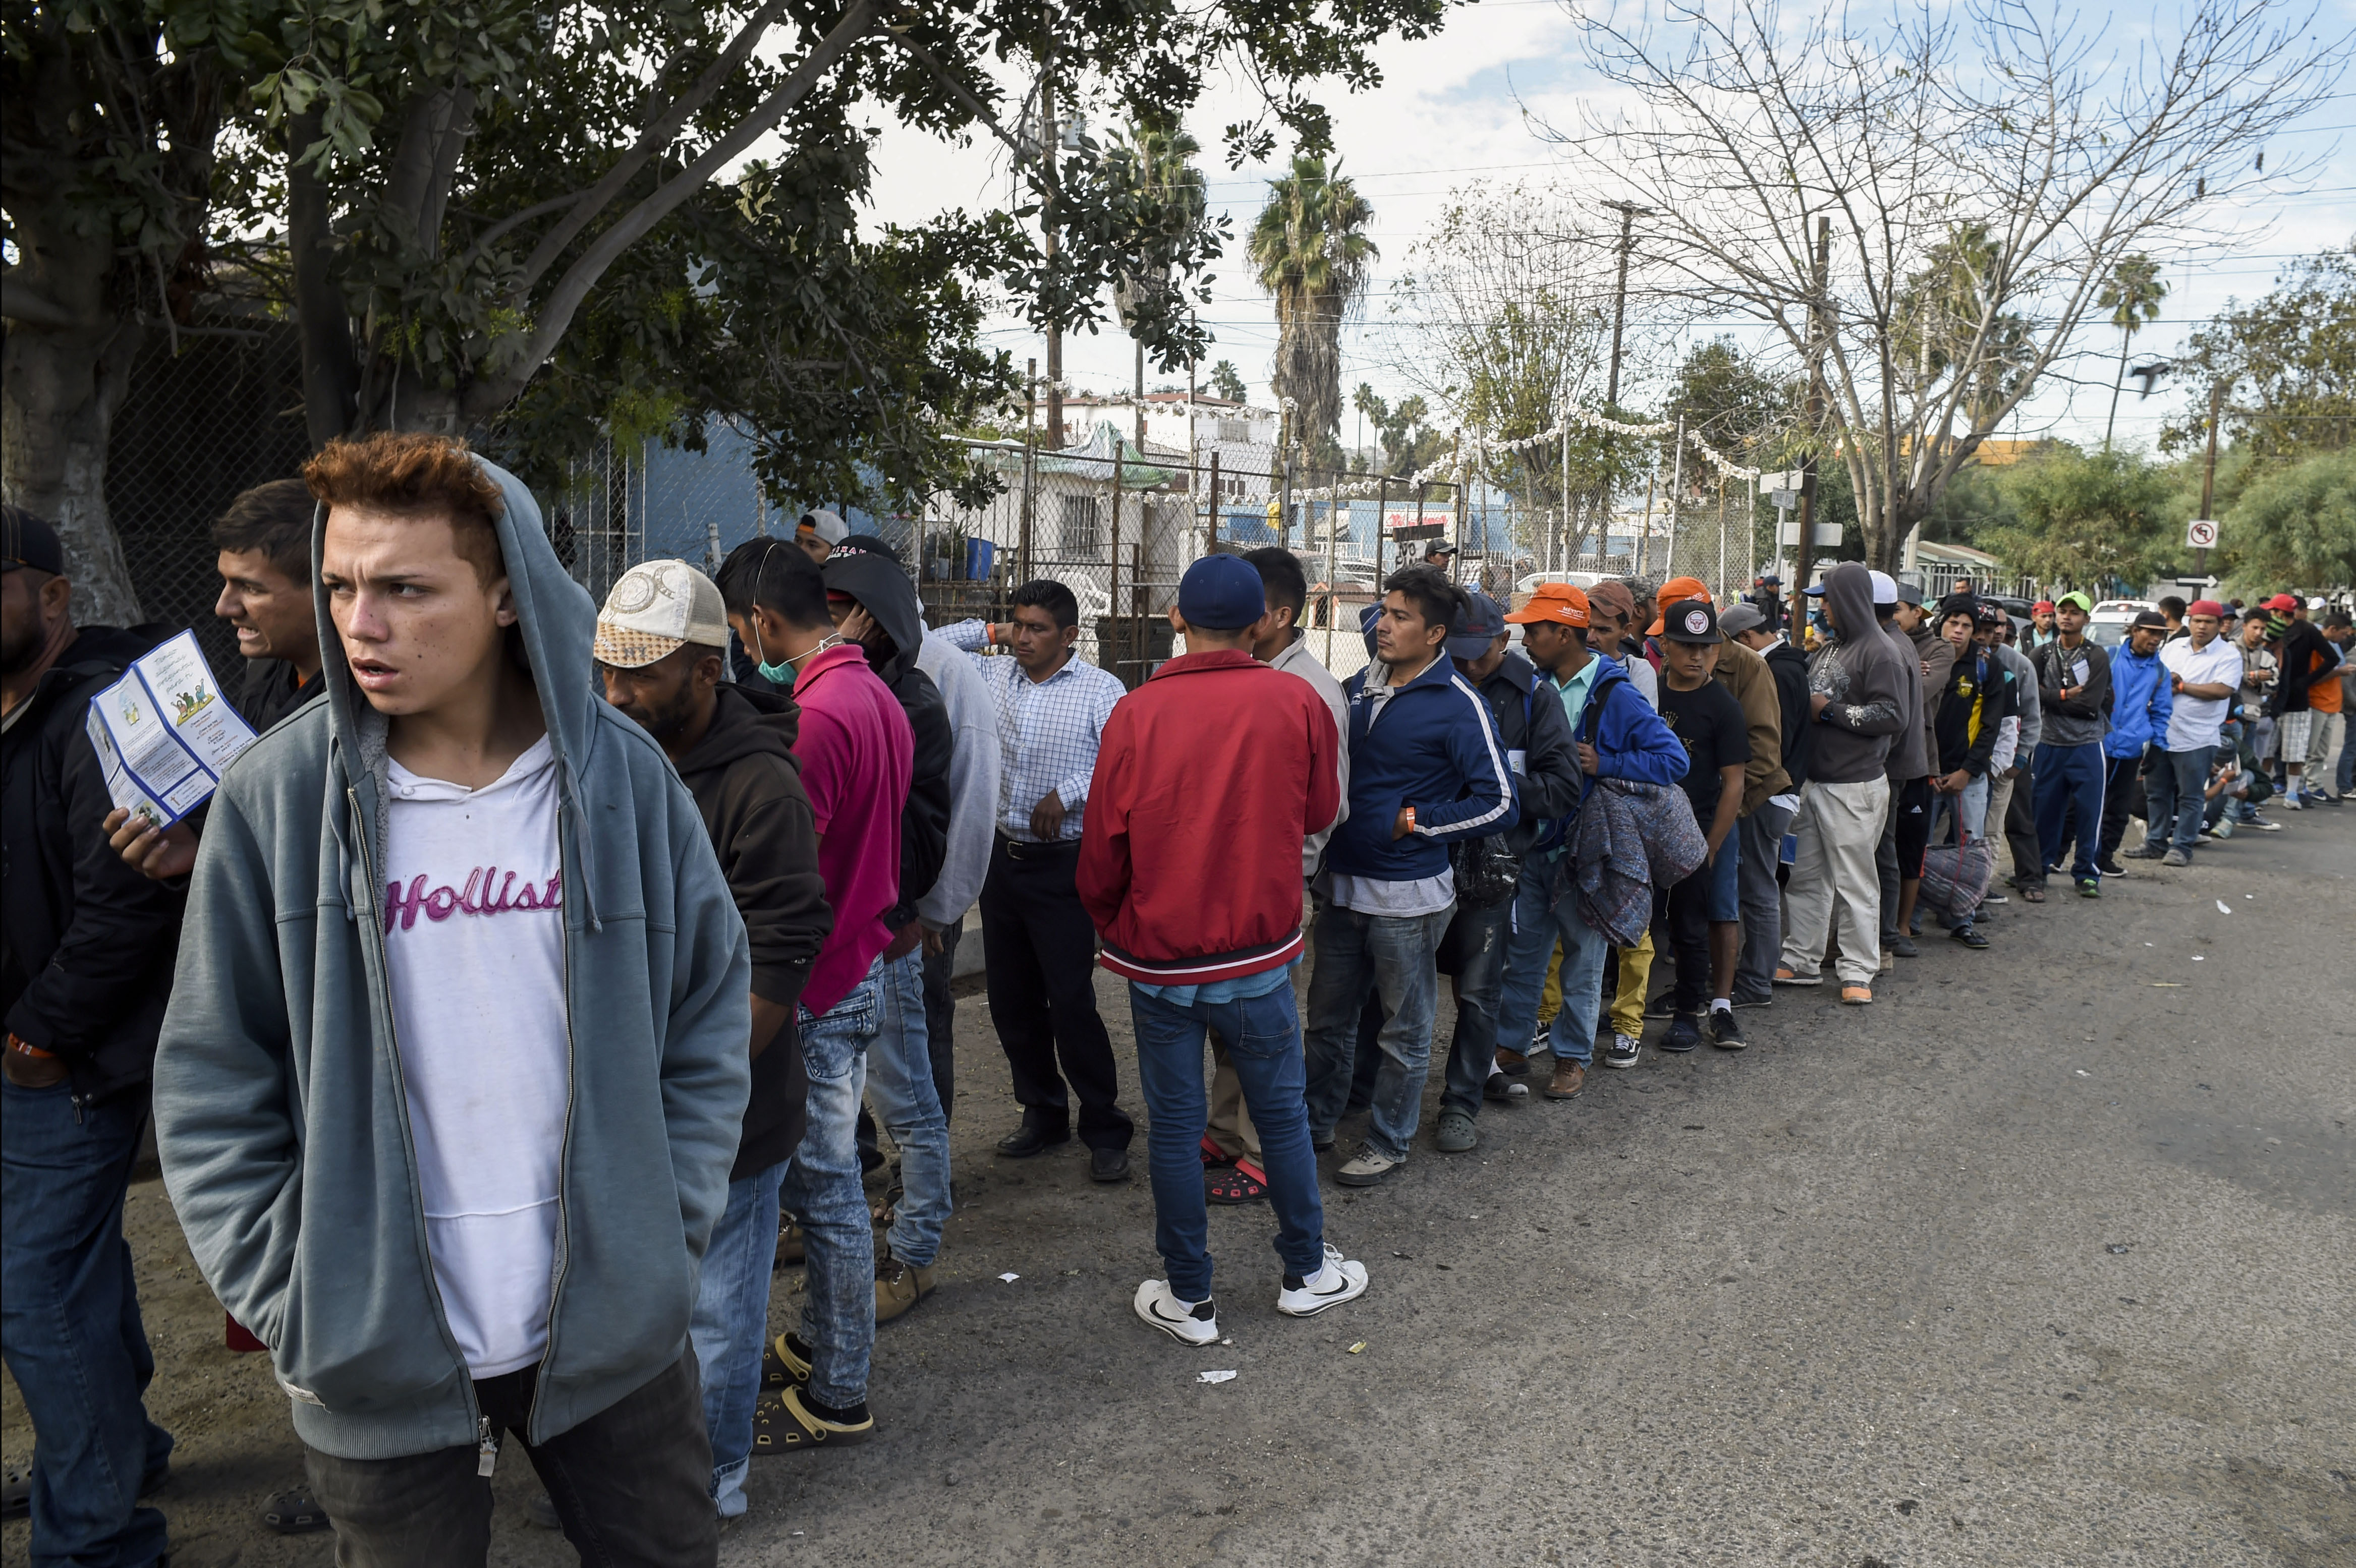 Migrantes llegan al norte de México, algunos dispuestos a lanzarse hacia EEUU (Fotos)